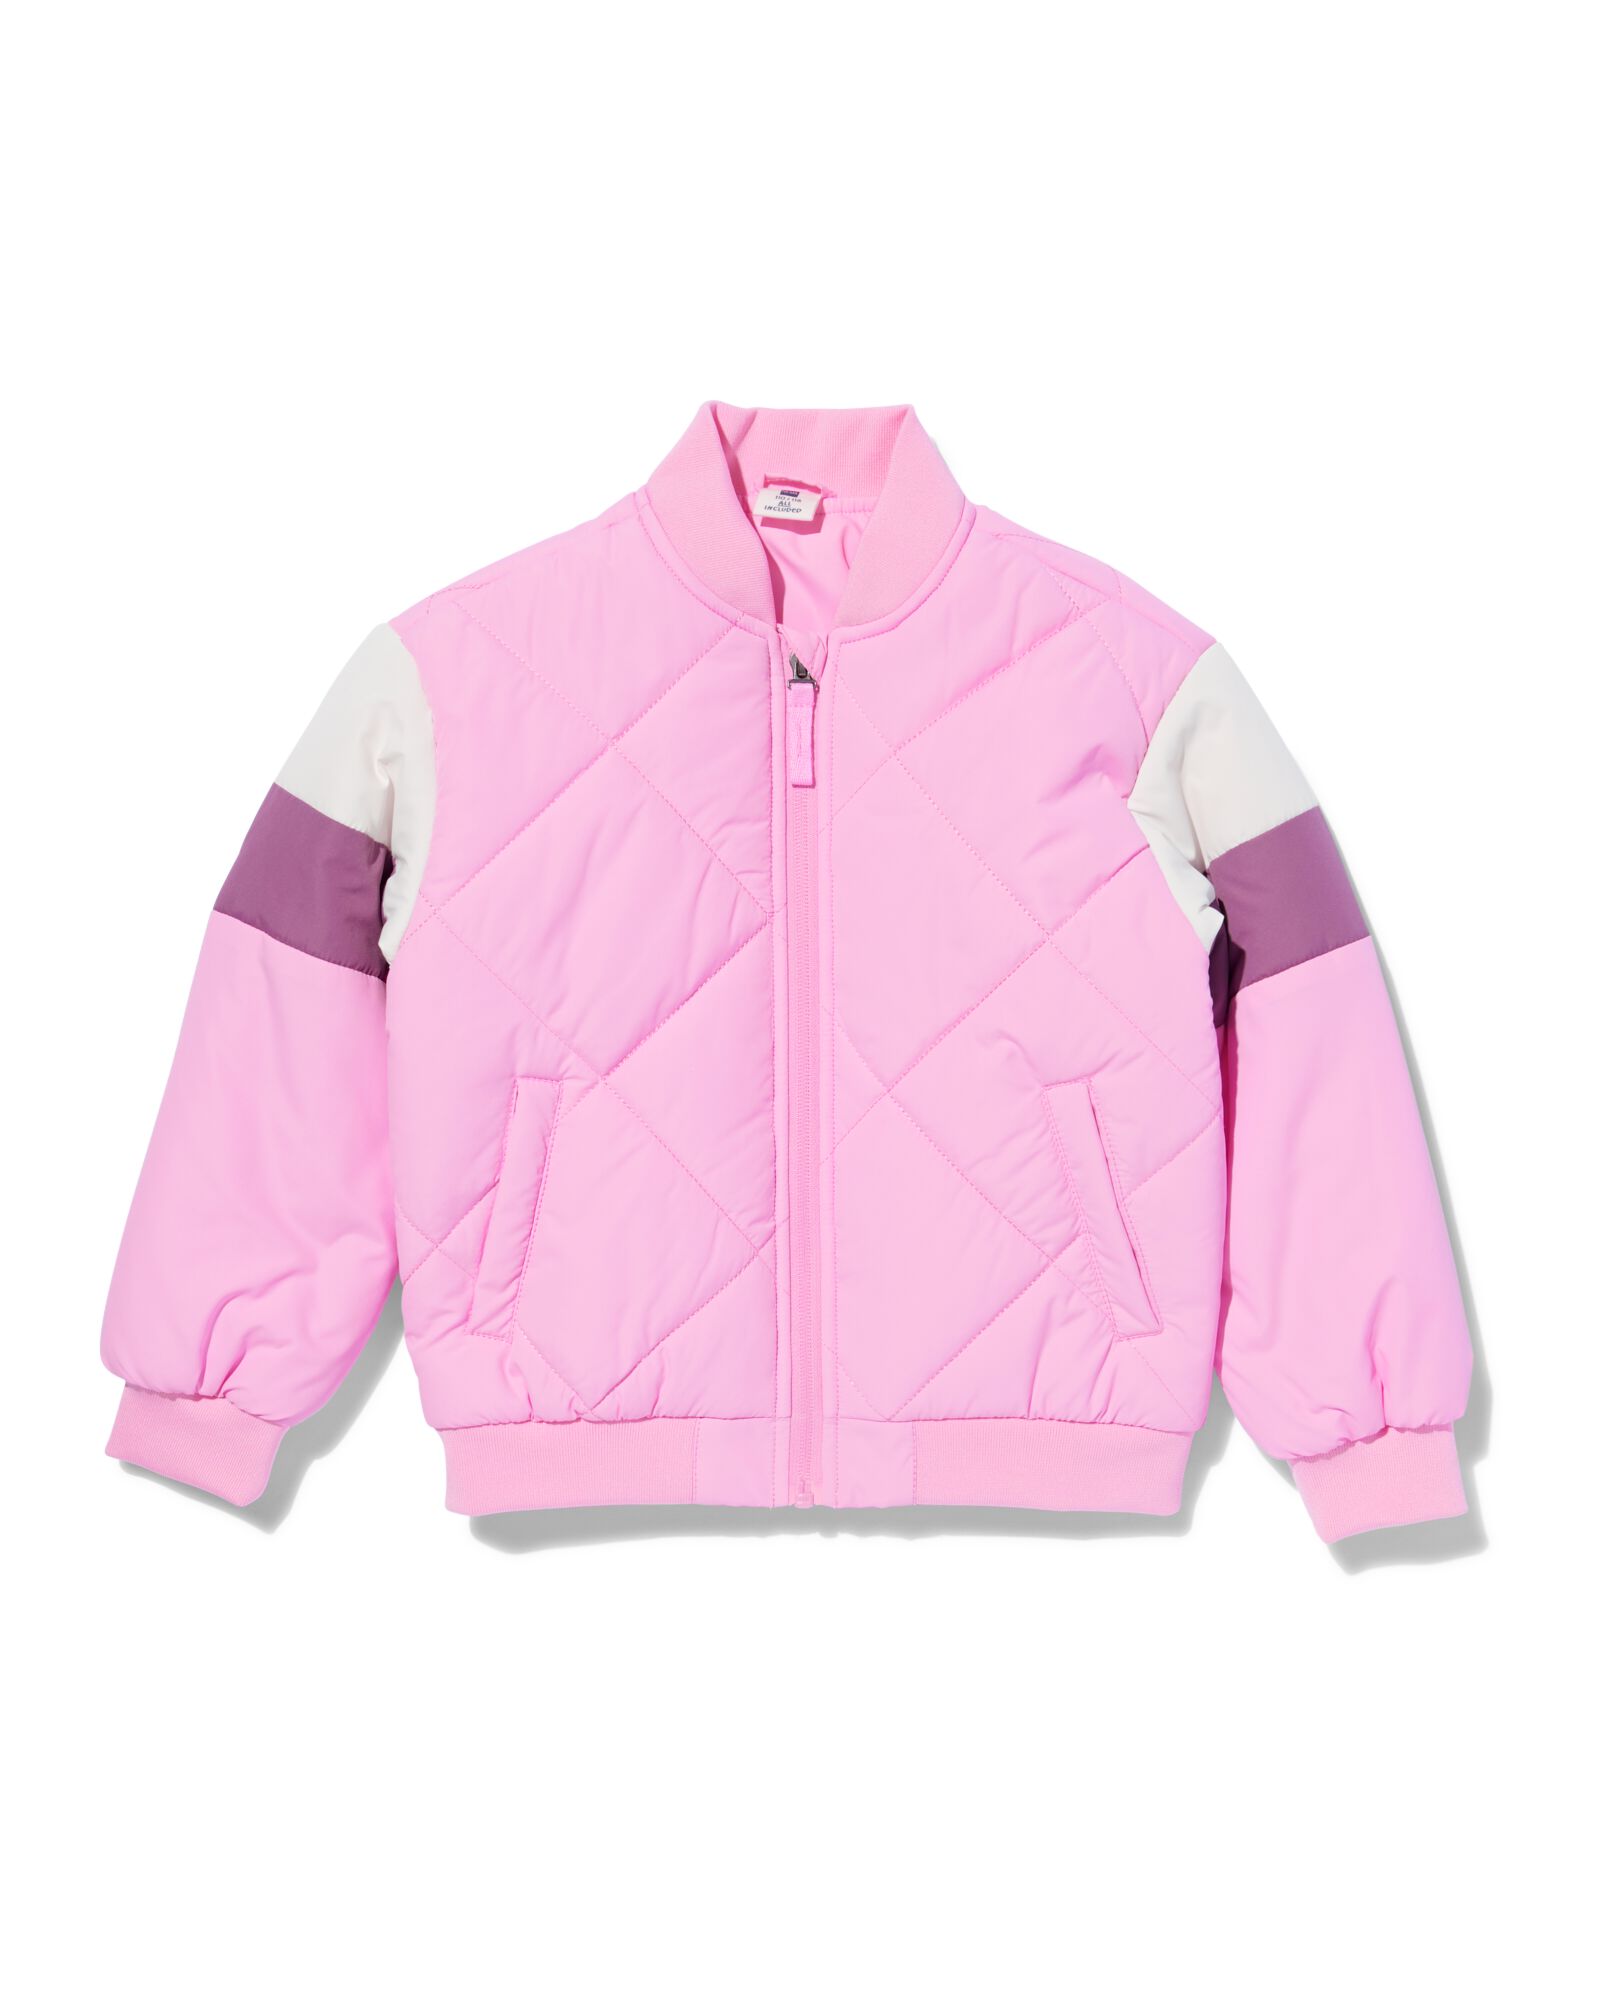 kinder bomberjack roze roze - 30833379PINK - HEMA